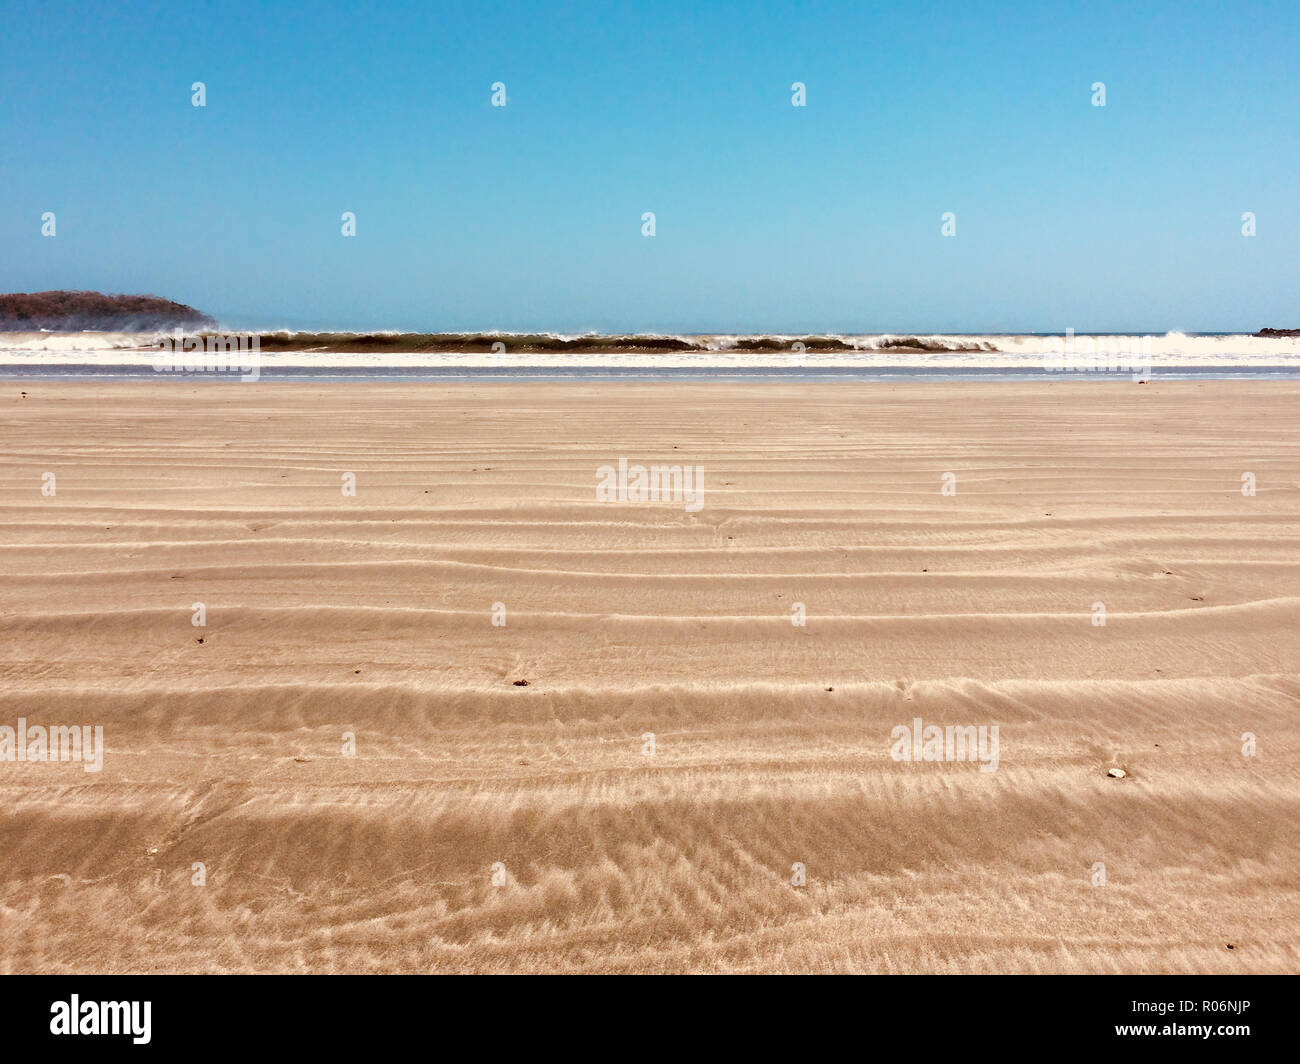 Plage de sable, mer et ciel bleu sur fond d'été ensoleillé Banque D'Images